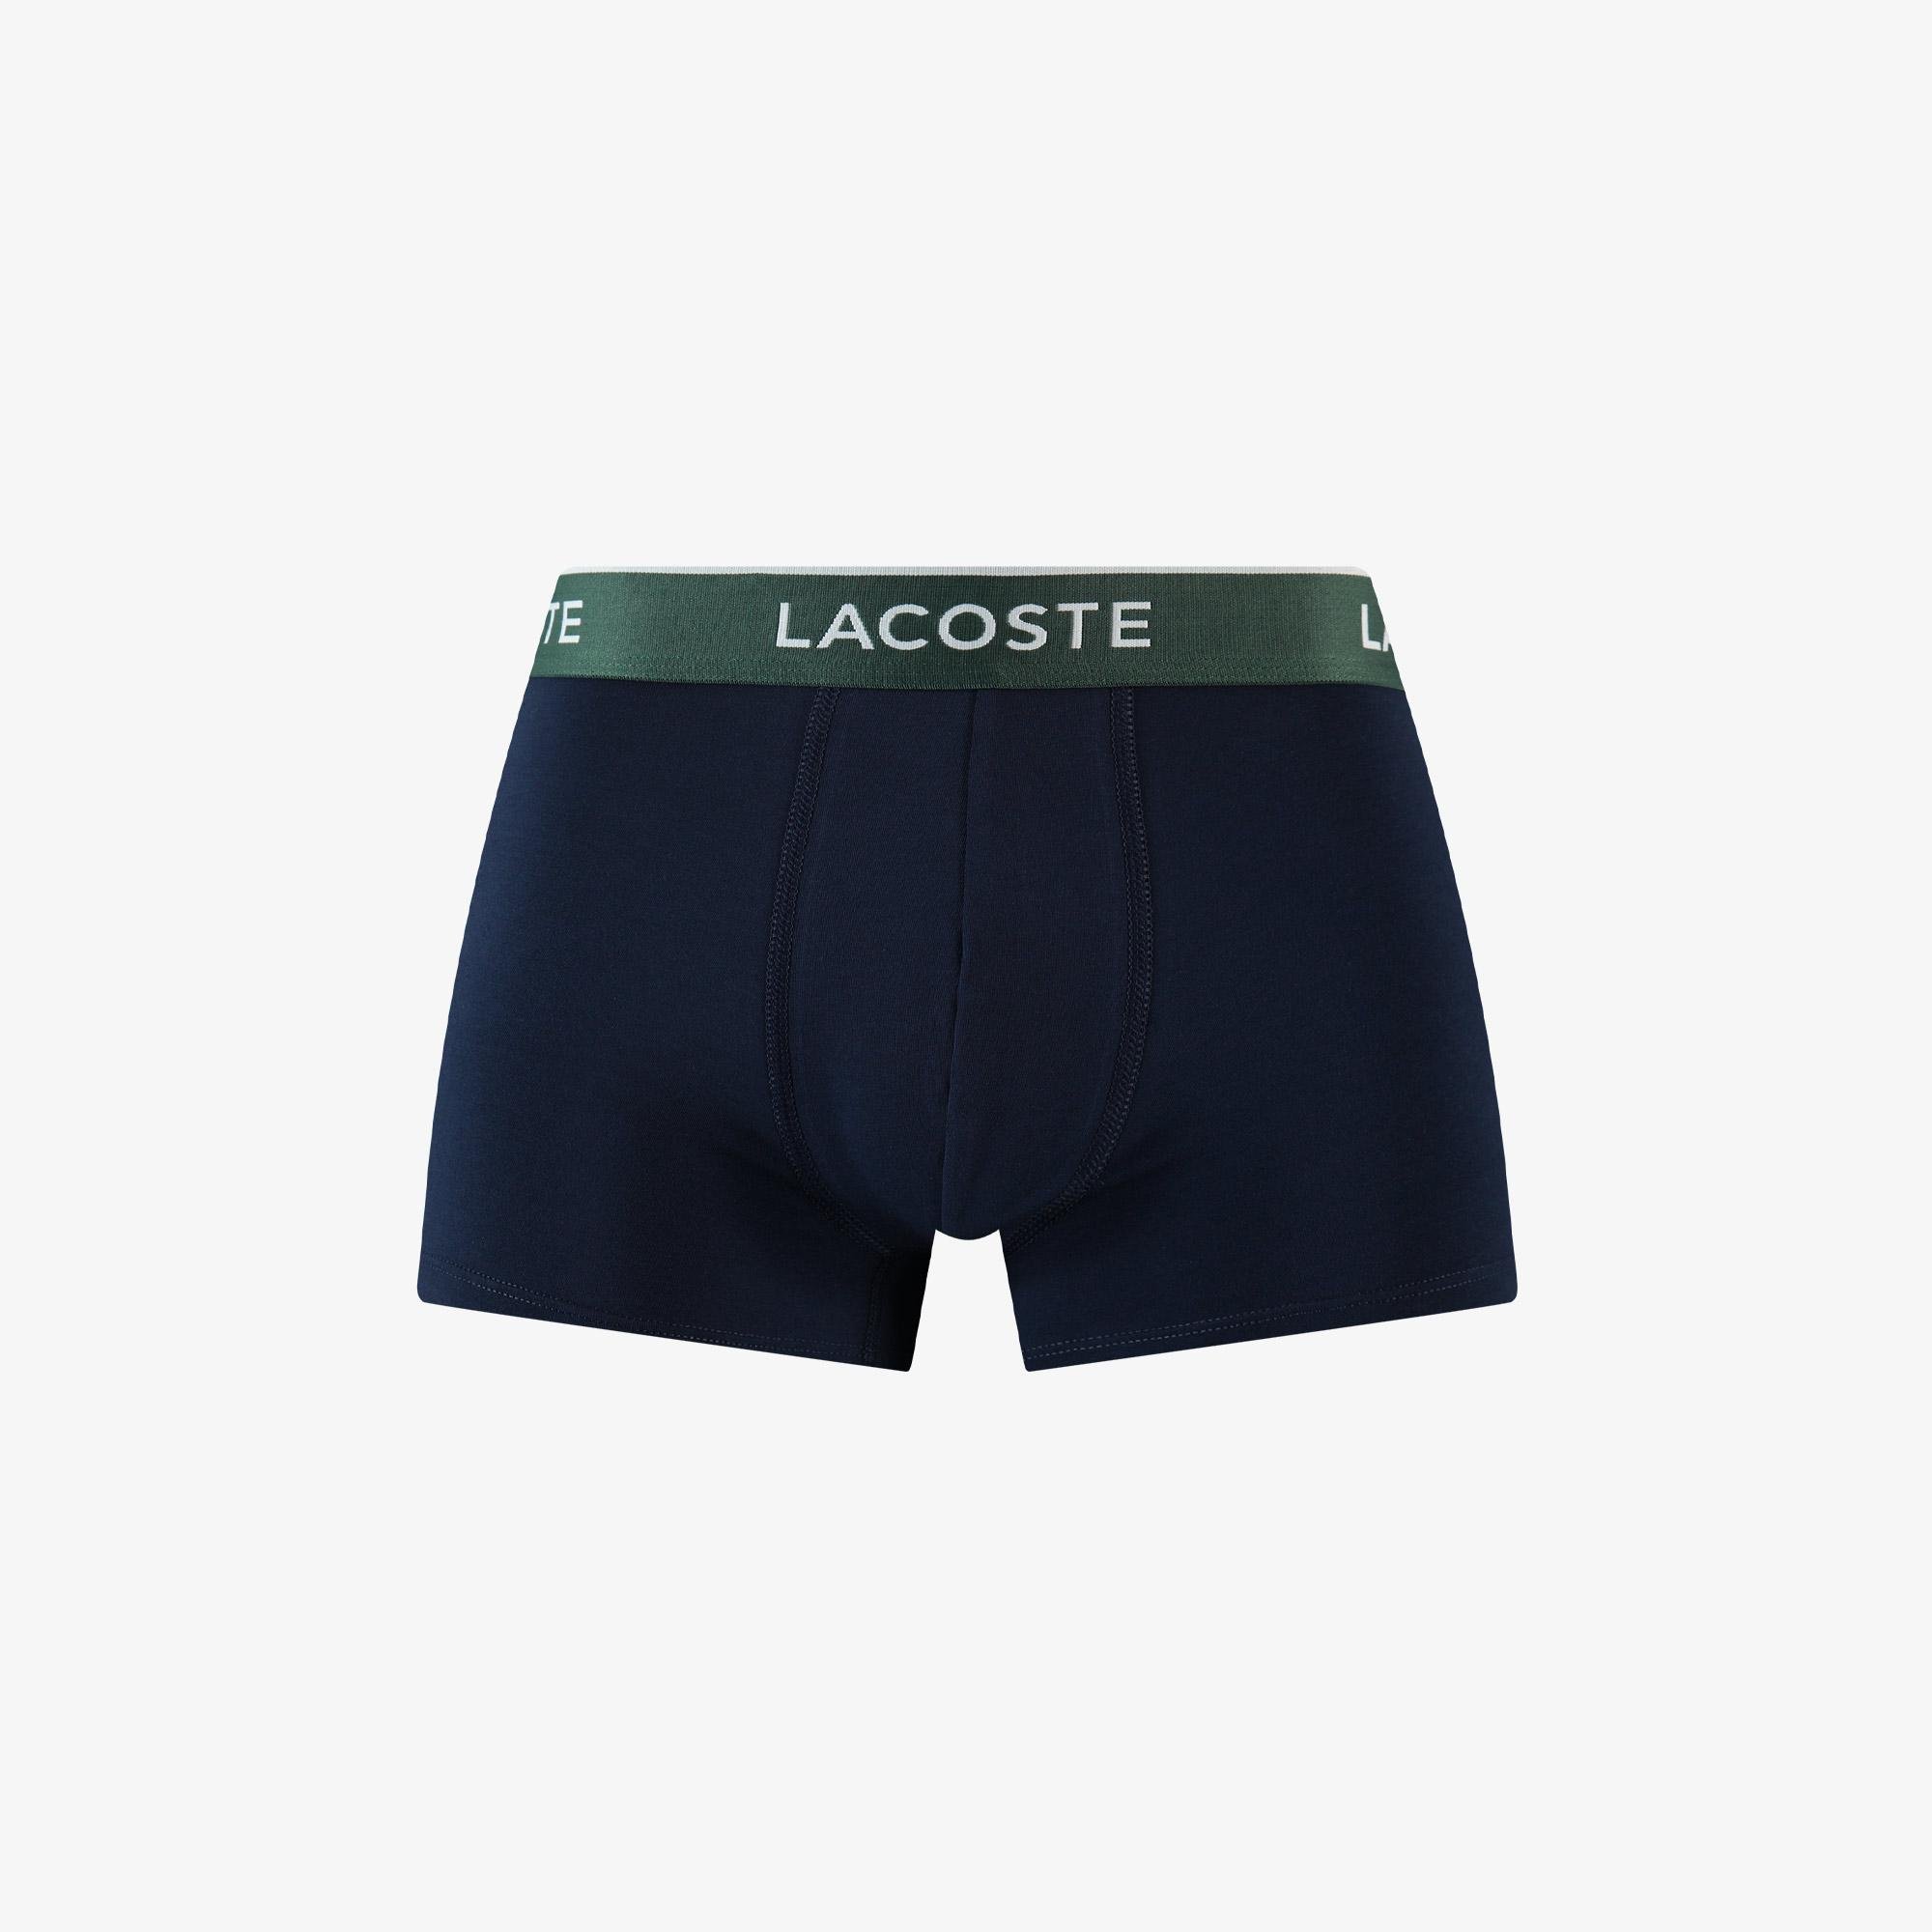 Lacoste Men’s 3-Pack Boxers